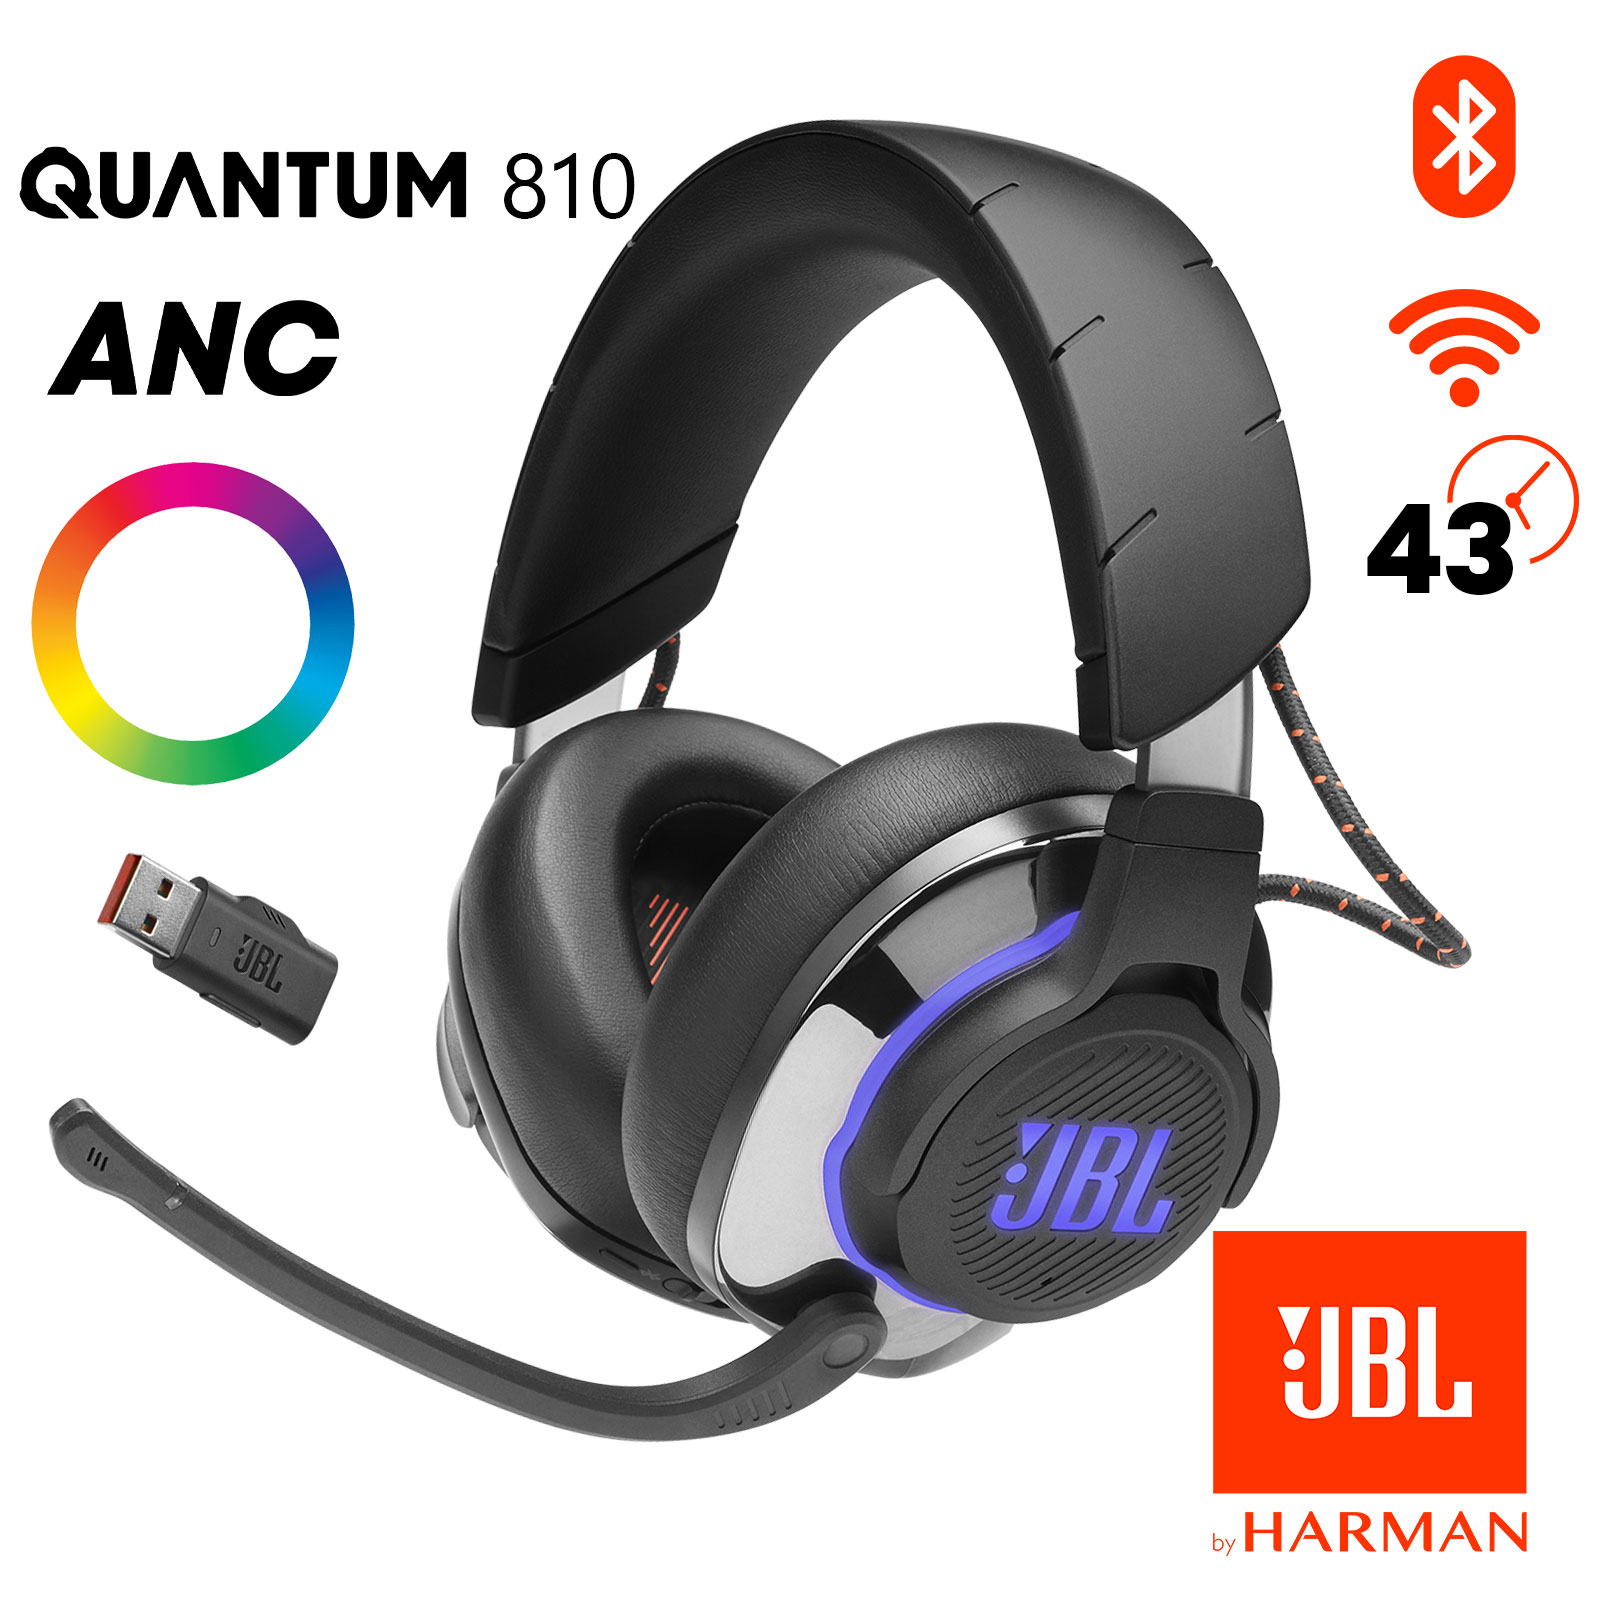 Casque JBL Quantum 810 Wireless Gamer Sans Fil Bluetooth avec Réduction de  Bruit + Micro Amovible, Autonomie 43 Heures - Noir - Français